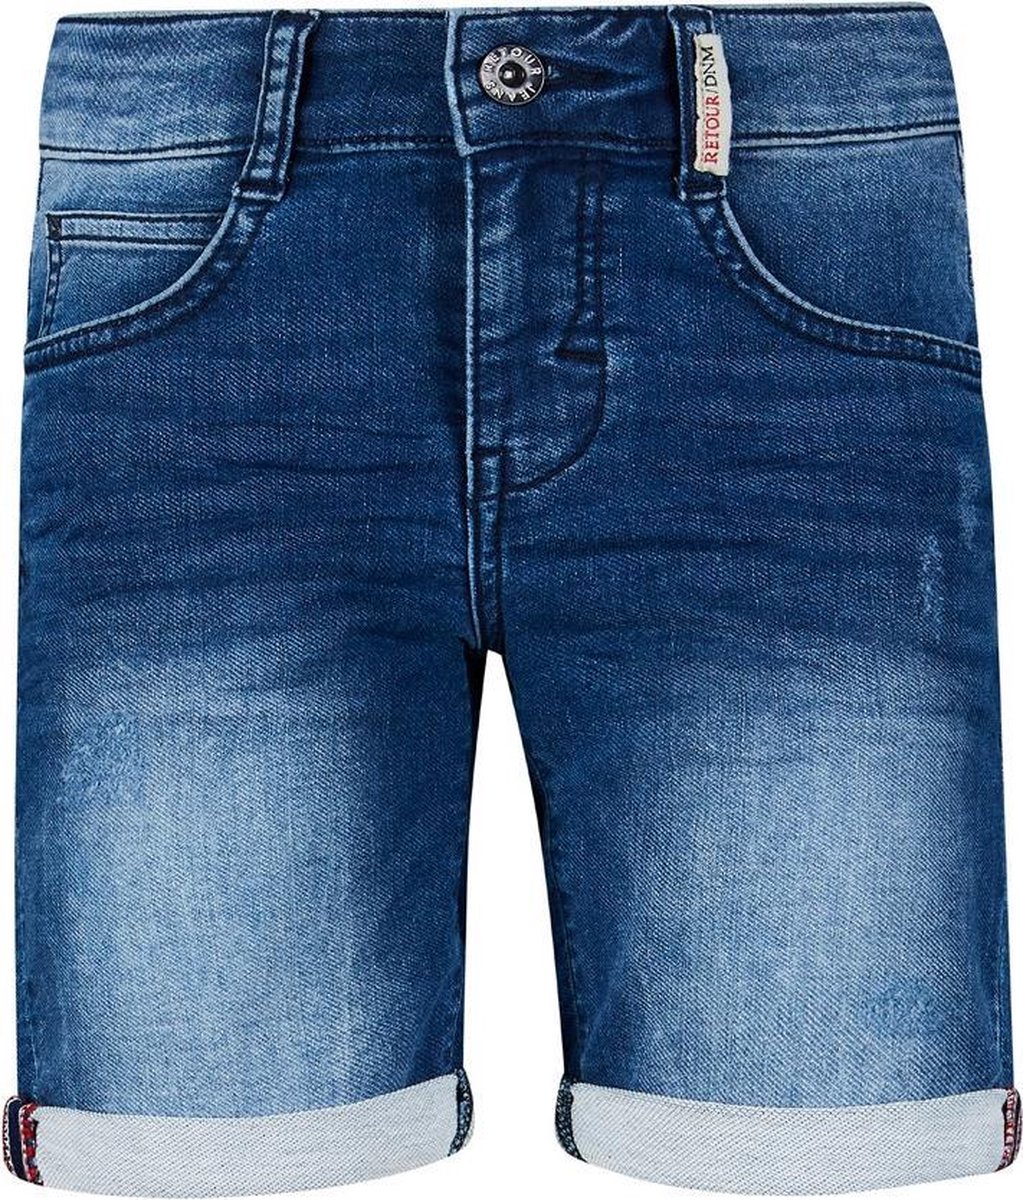 Retour jongens korte jeans Loek Medium Blue Denim S21 | bol.com